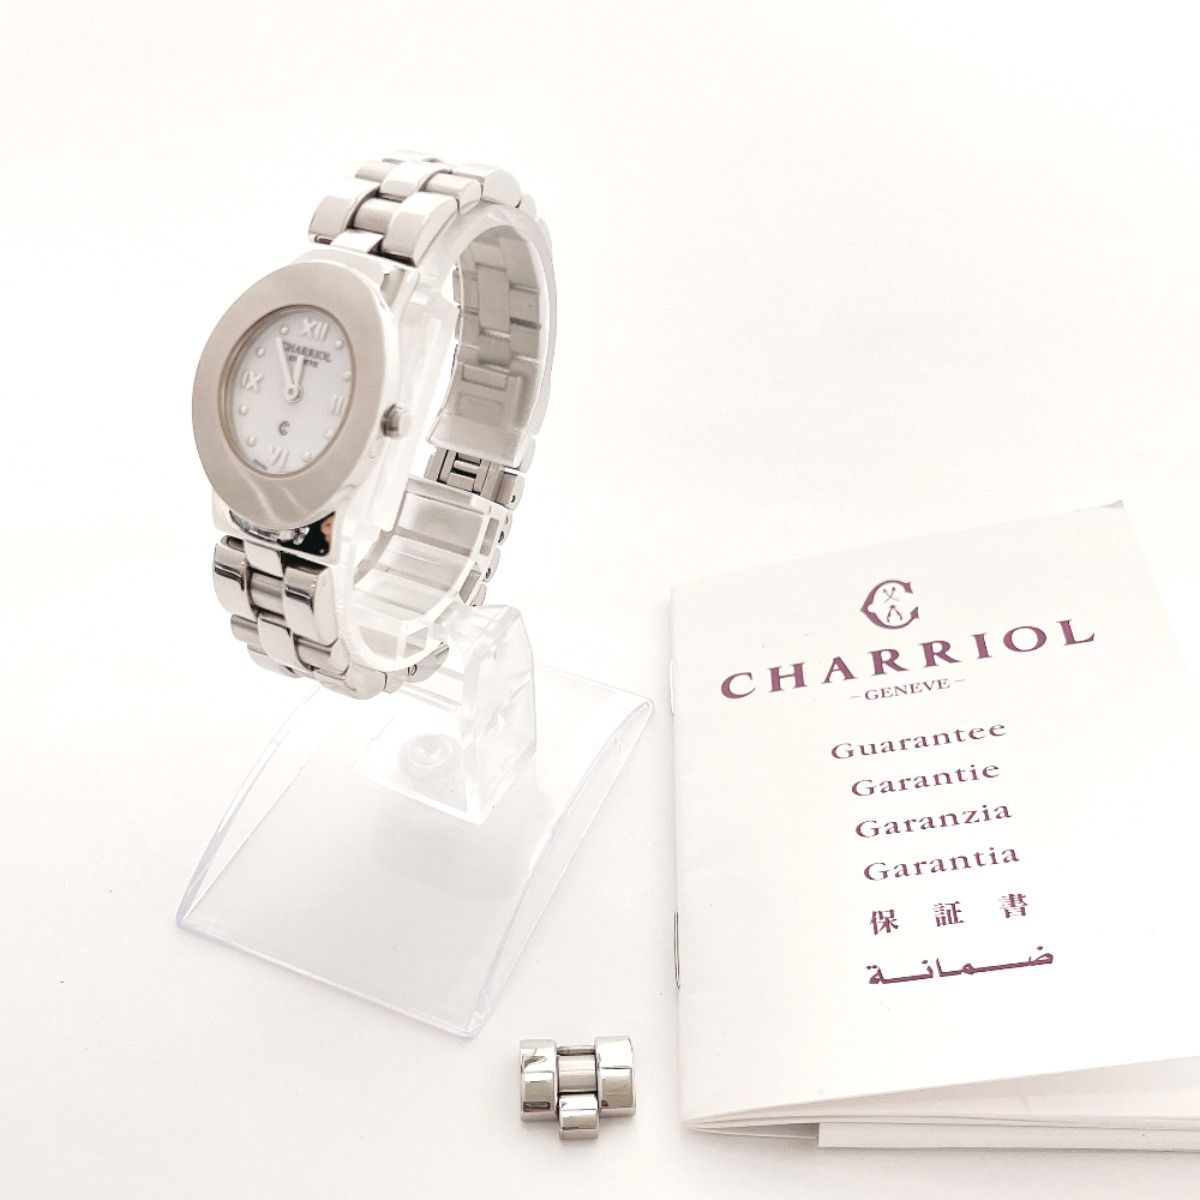 シャリオール 腕時計 アズーロ AZURO300900 シルバー